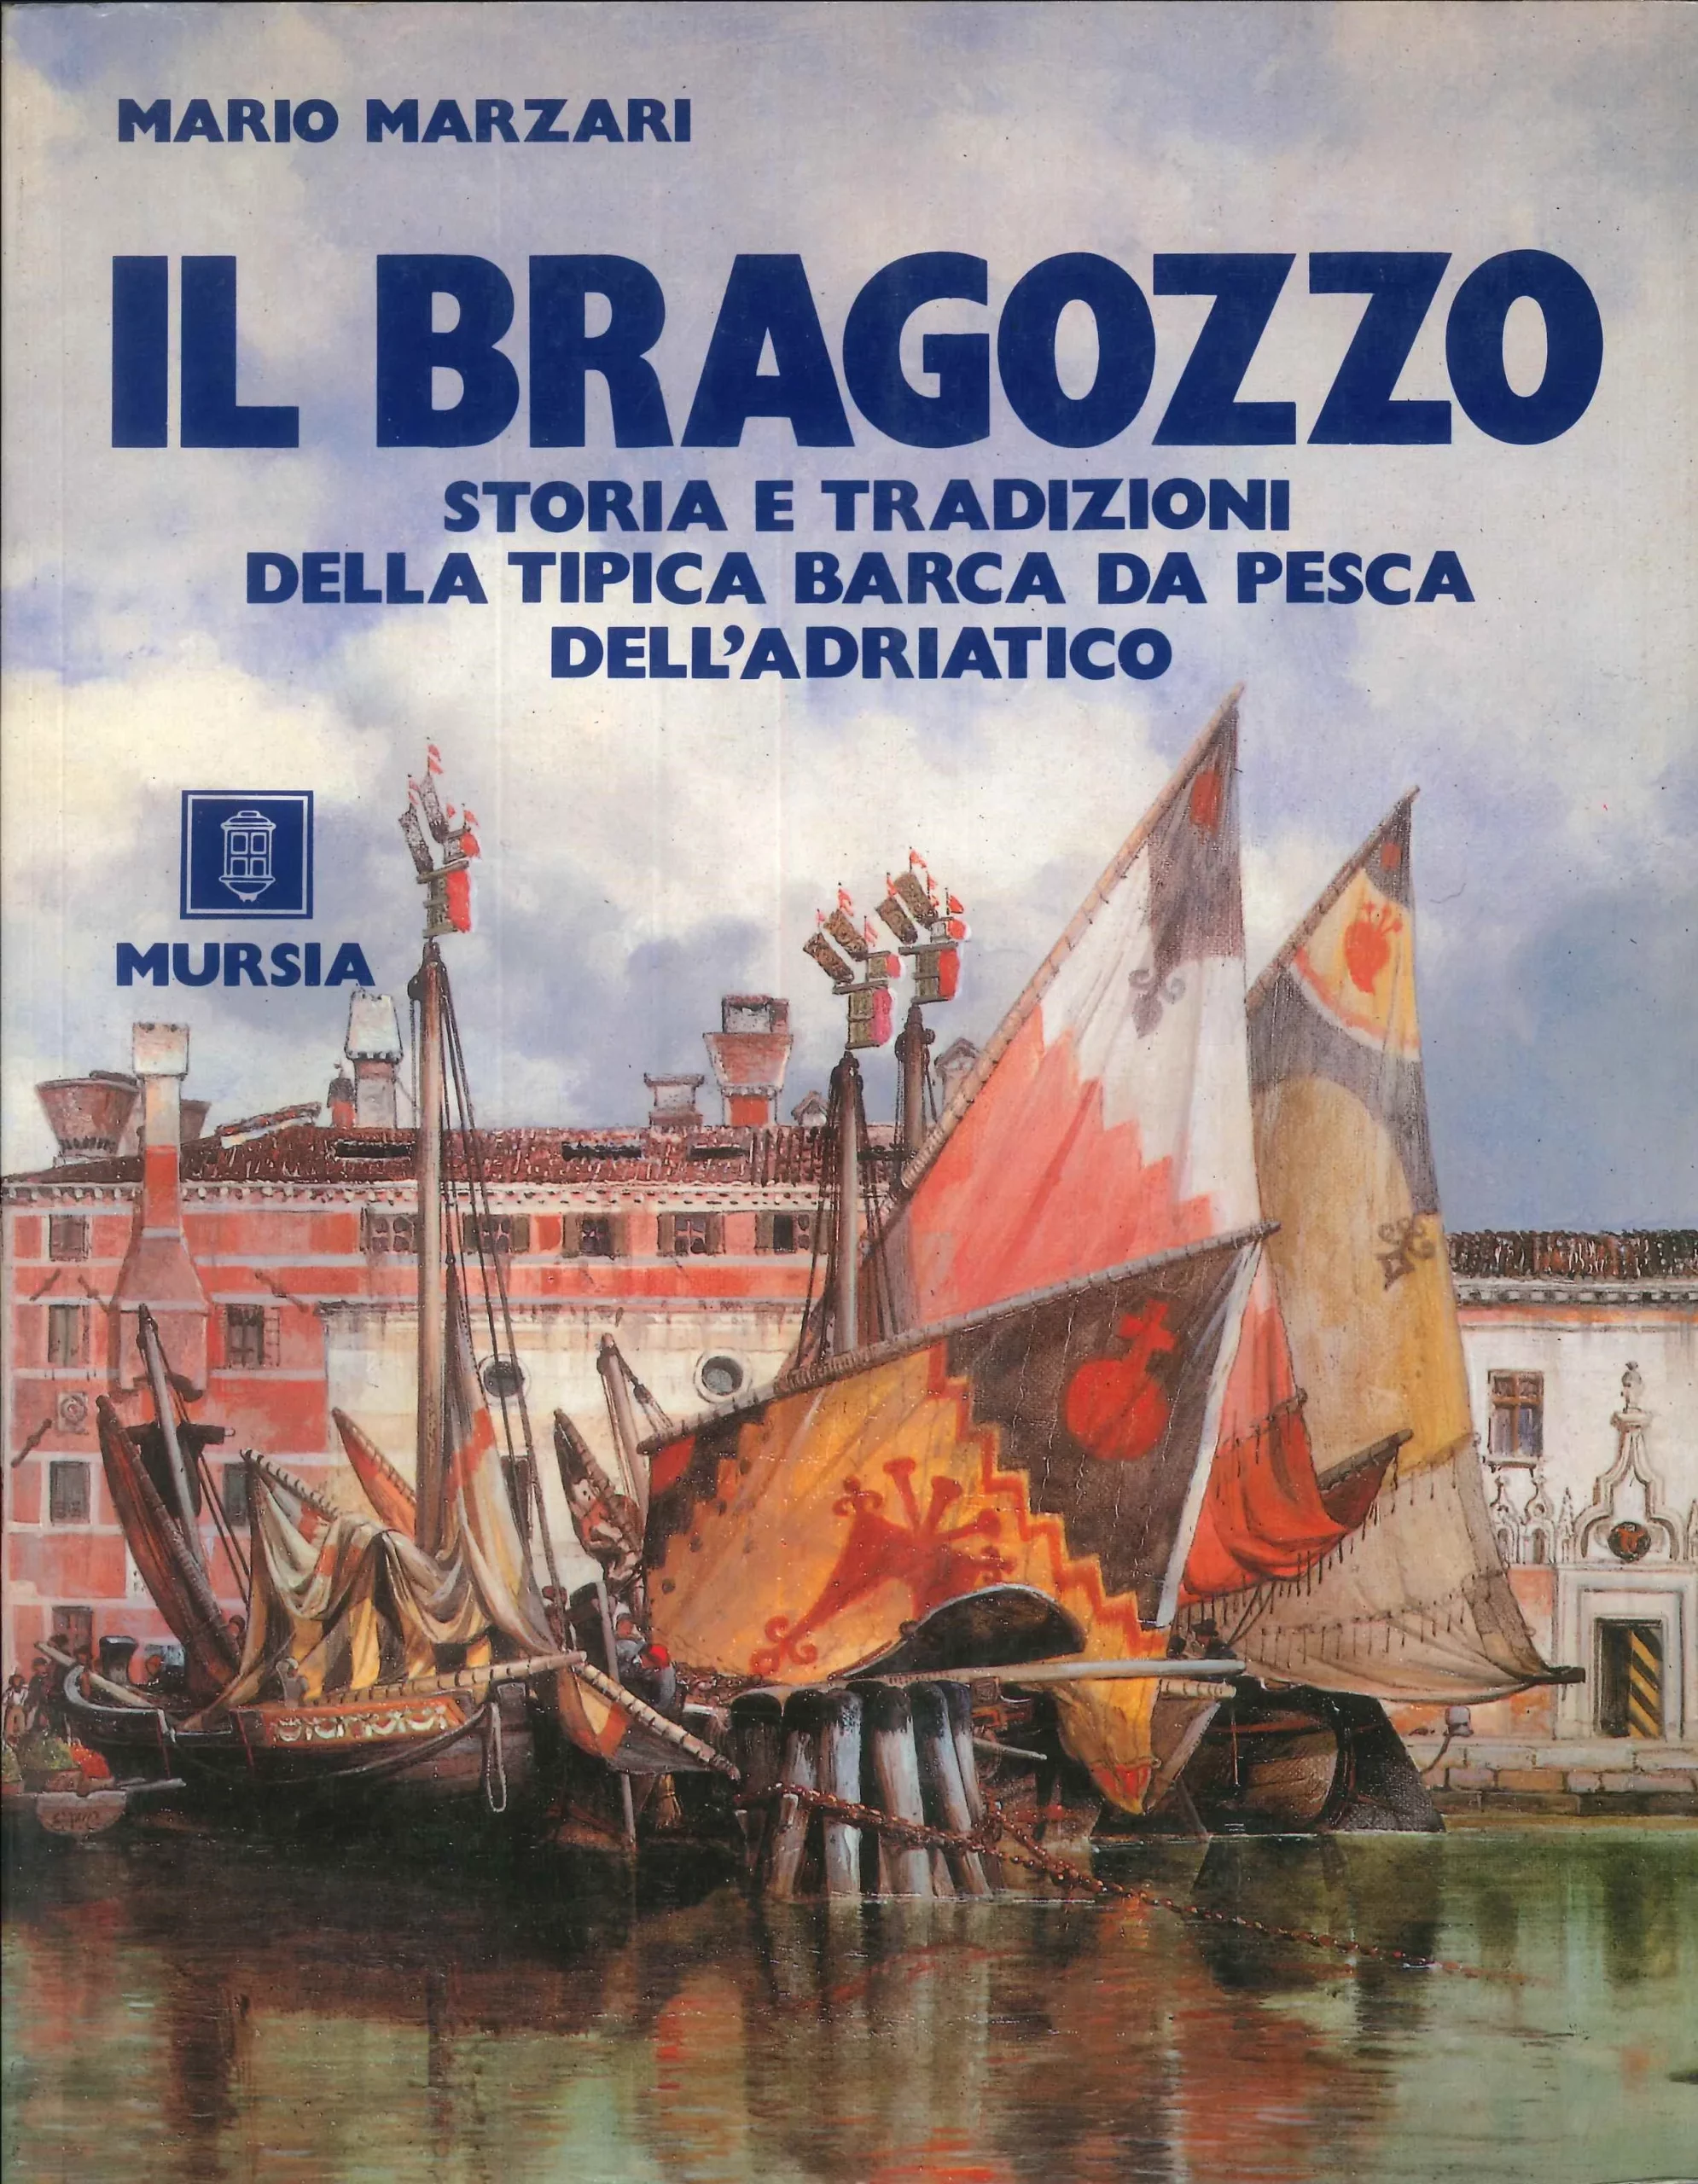 Il Bragozzo – Storia e tradizioni della tipica barca de pesca dell’Adriatico